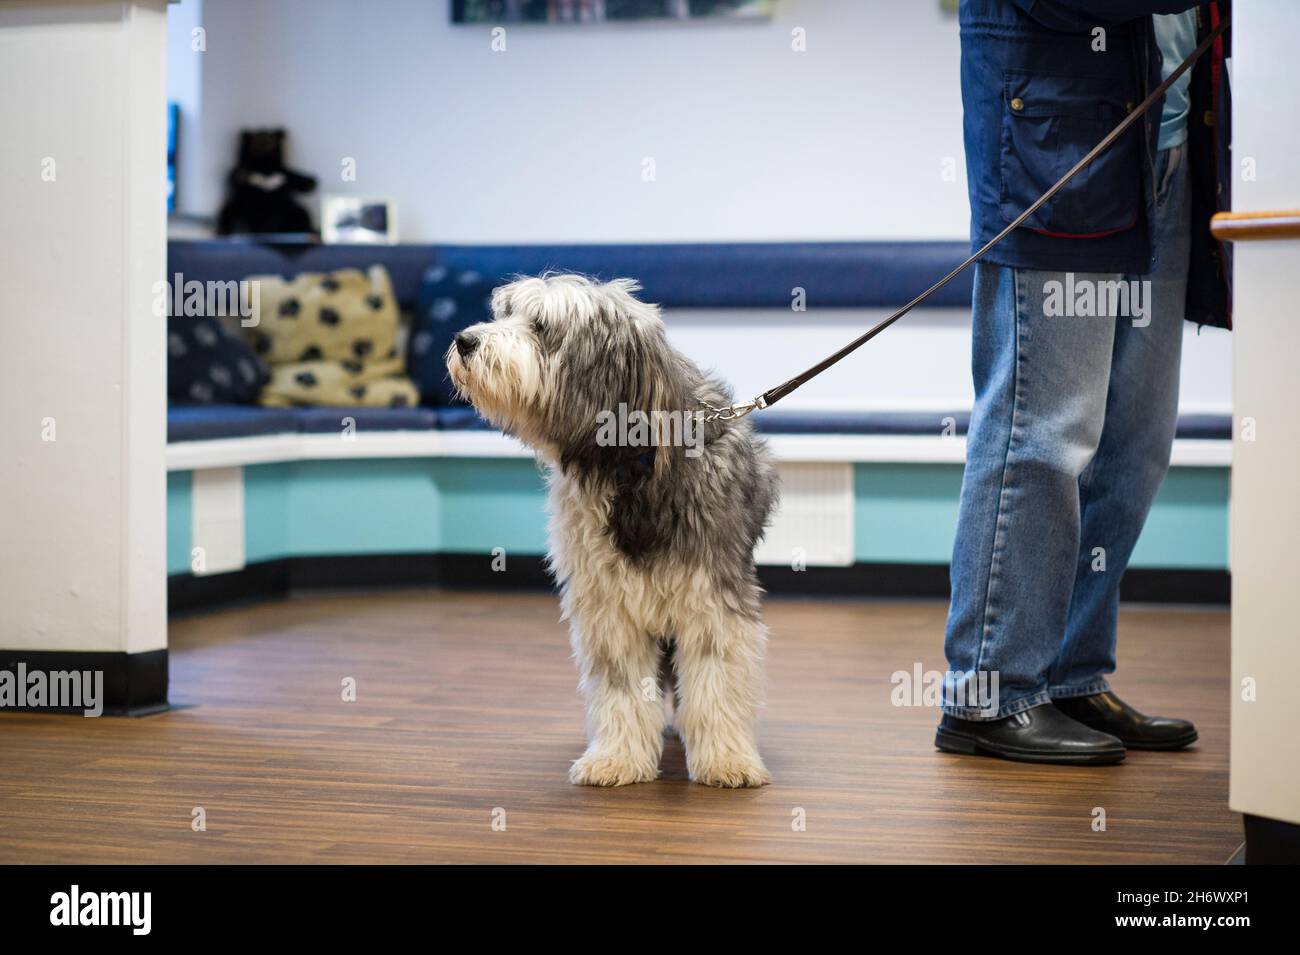 Un chien de compagnie attend patiemment alors que son propriétaire parle au personnel d'accueil lors d'une chirurgie vétérinaire à Nottingham, Angleterre, Royaume-Uni. Banque D'Images